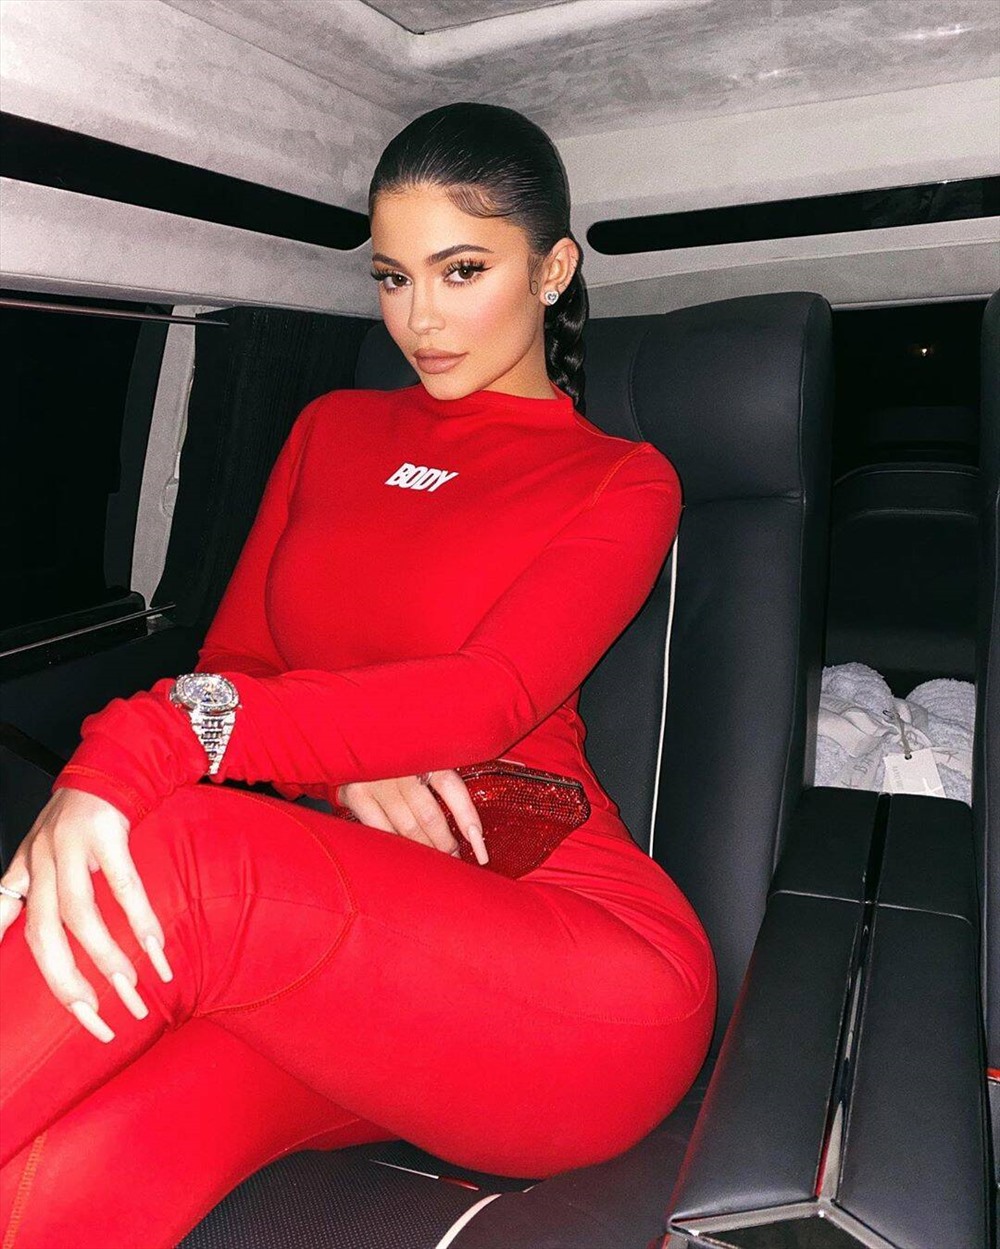 Kylie Jenner trở thành tỉ phú tự thân trẻ nhất thế giới trong bảng xếp hạng của Forbes vào tháng 3.2019 với khối tài sản trị giá 1 tỉ USD. Số tiền này cô kiếm được nhờ vào thương hiệu mỹ phẩm Kylie Cosmetics mà cô sáng lập. Ảnh: ST